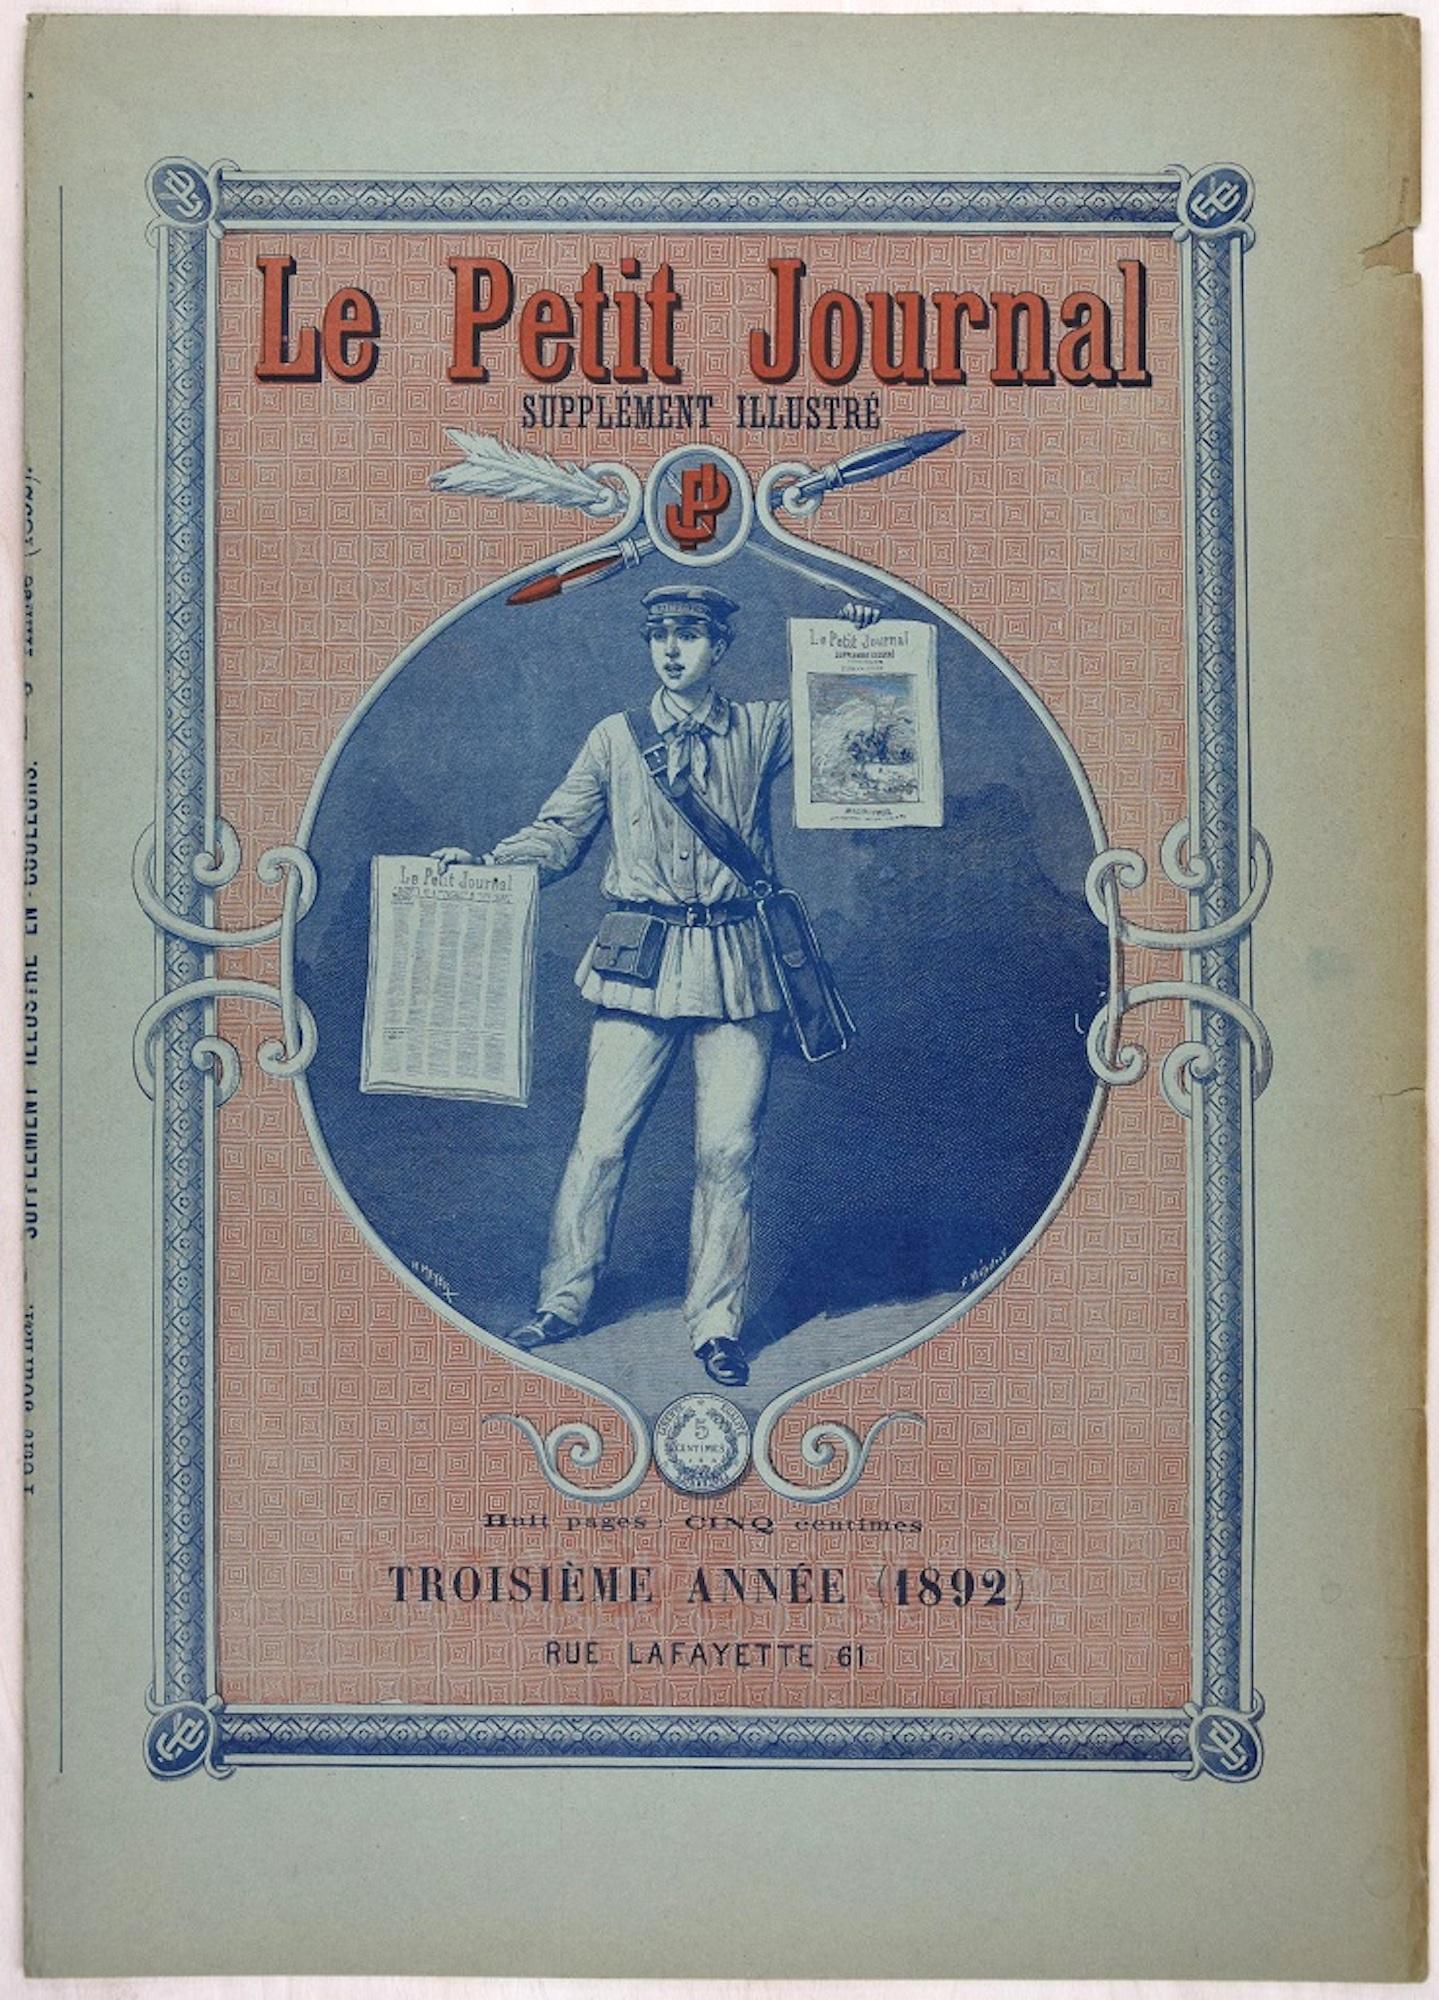 Le Petit Journal - Affiche vintage, 1892